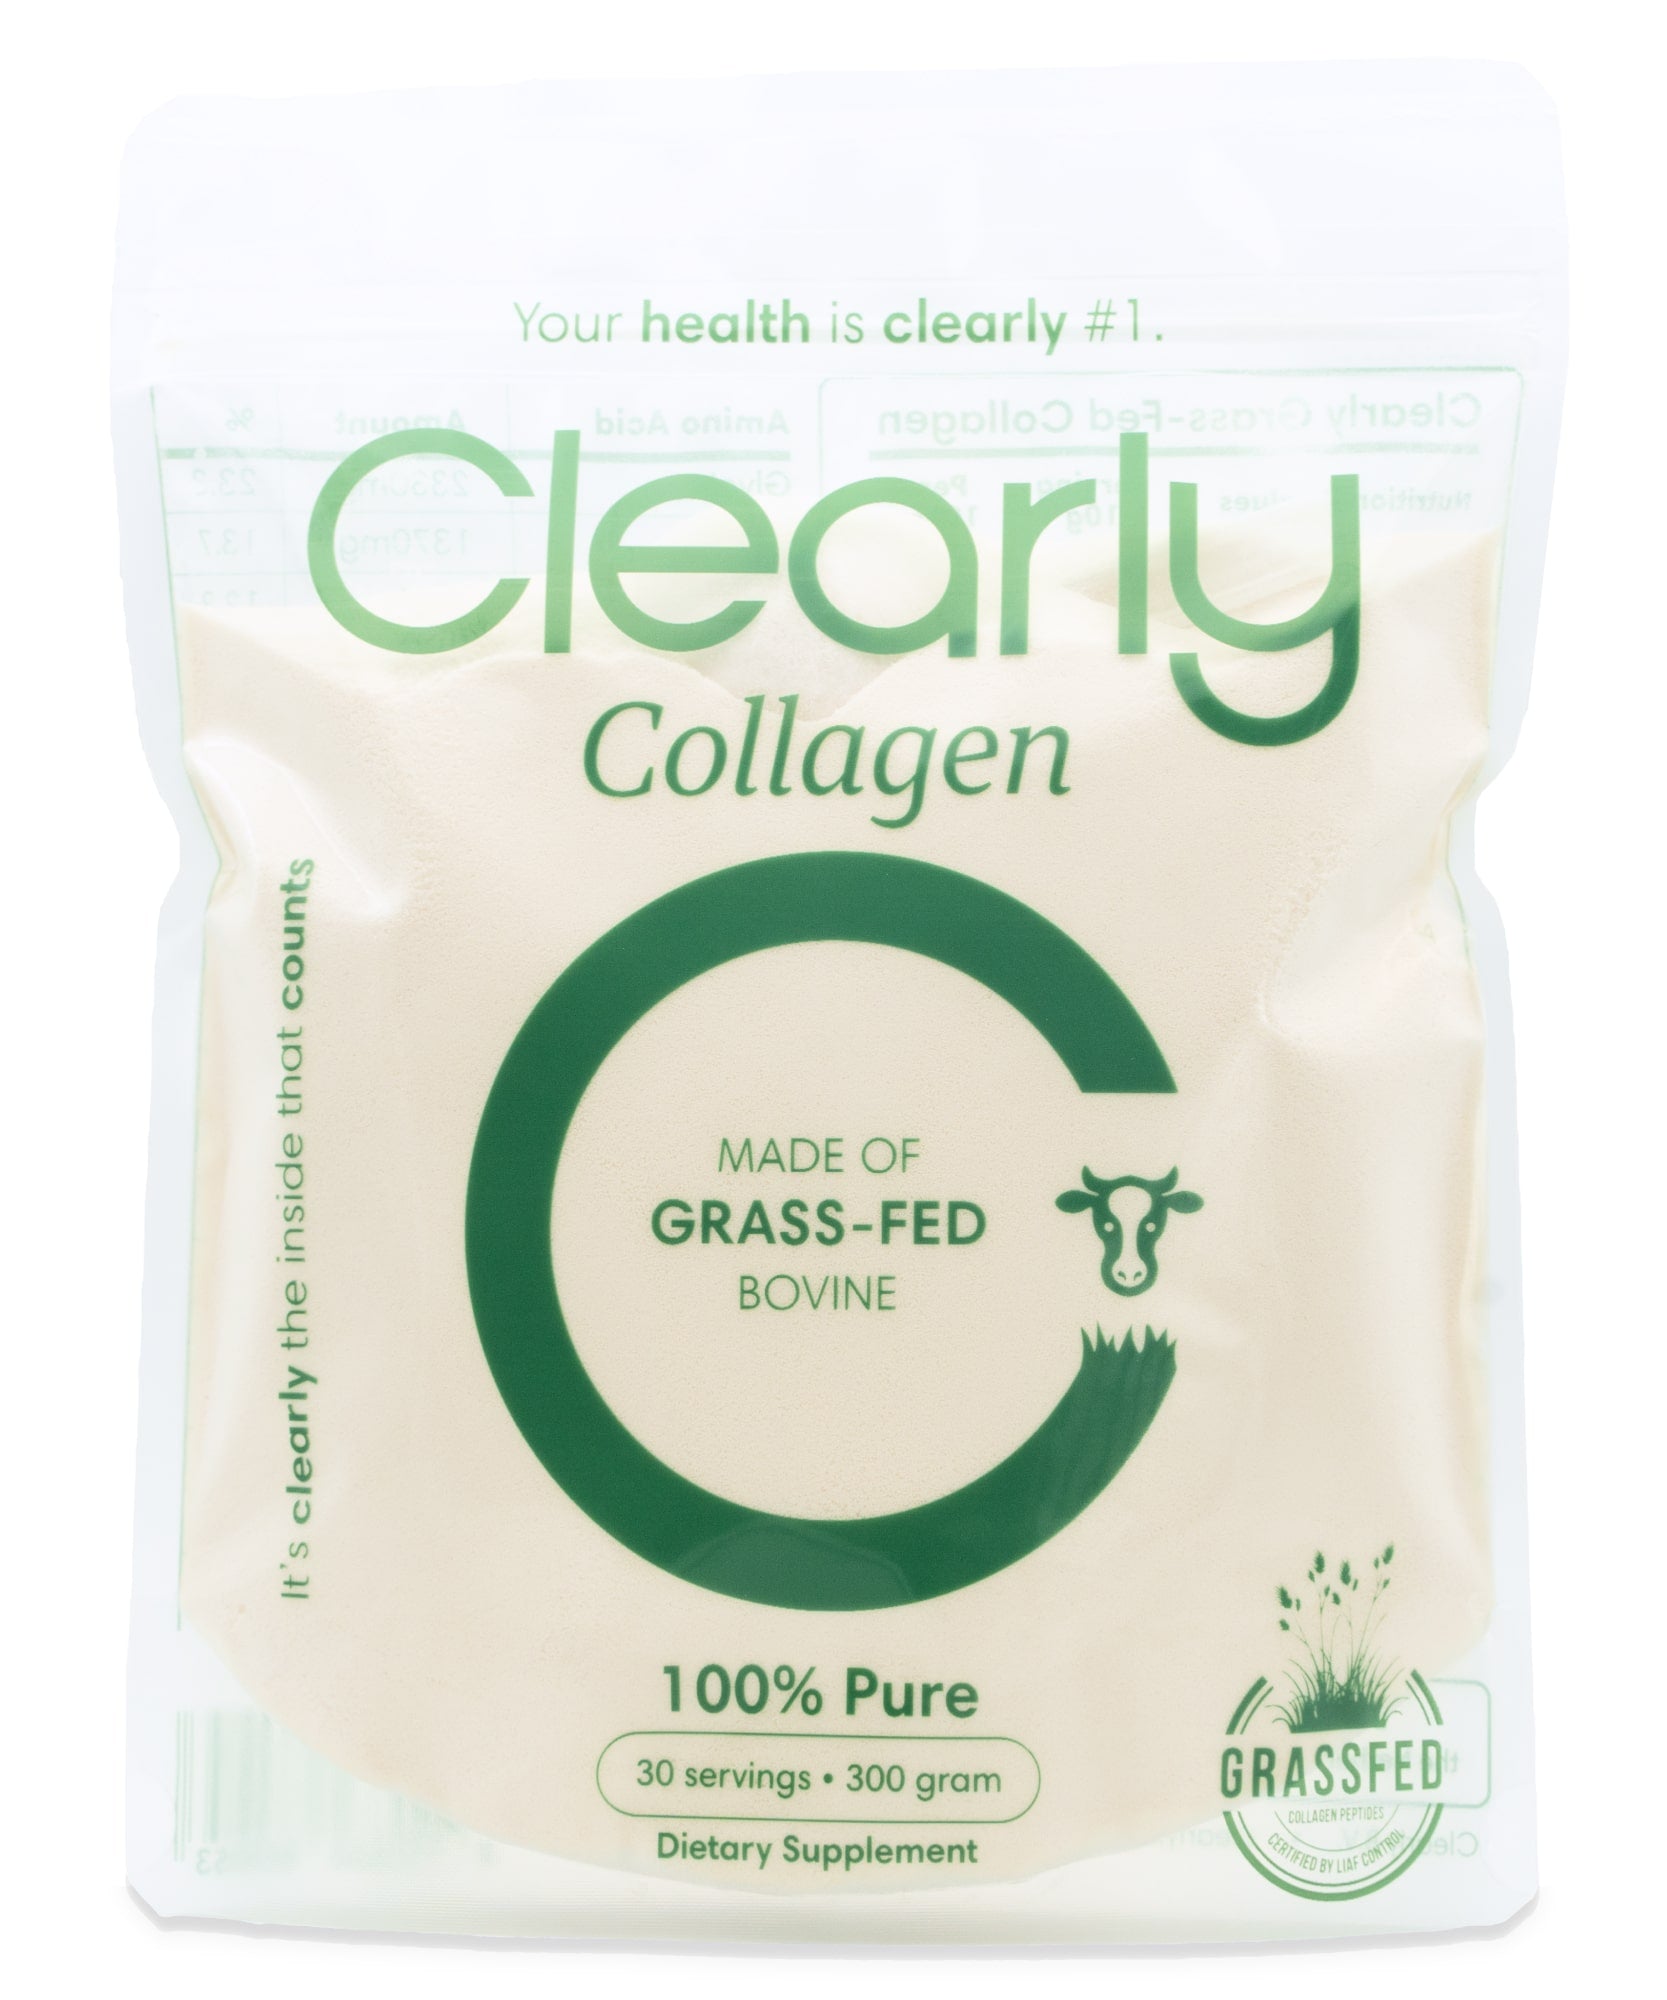 Grass-fed Collagen